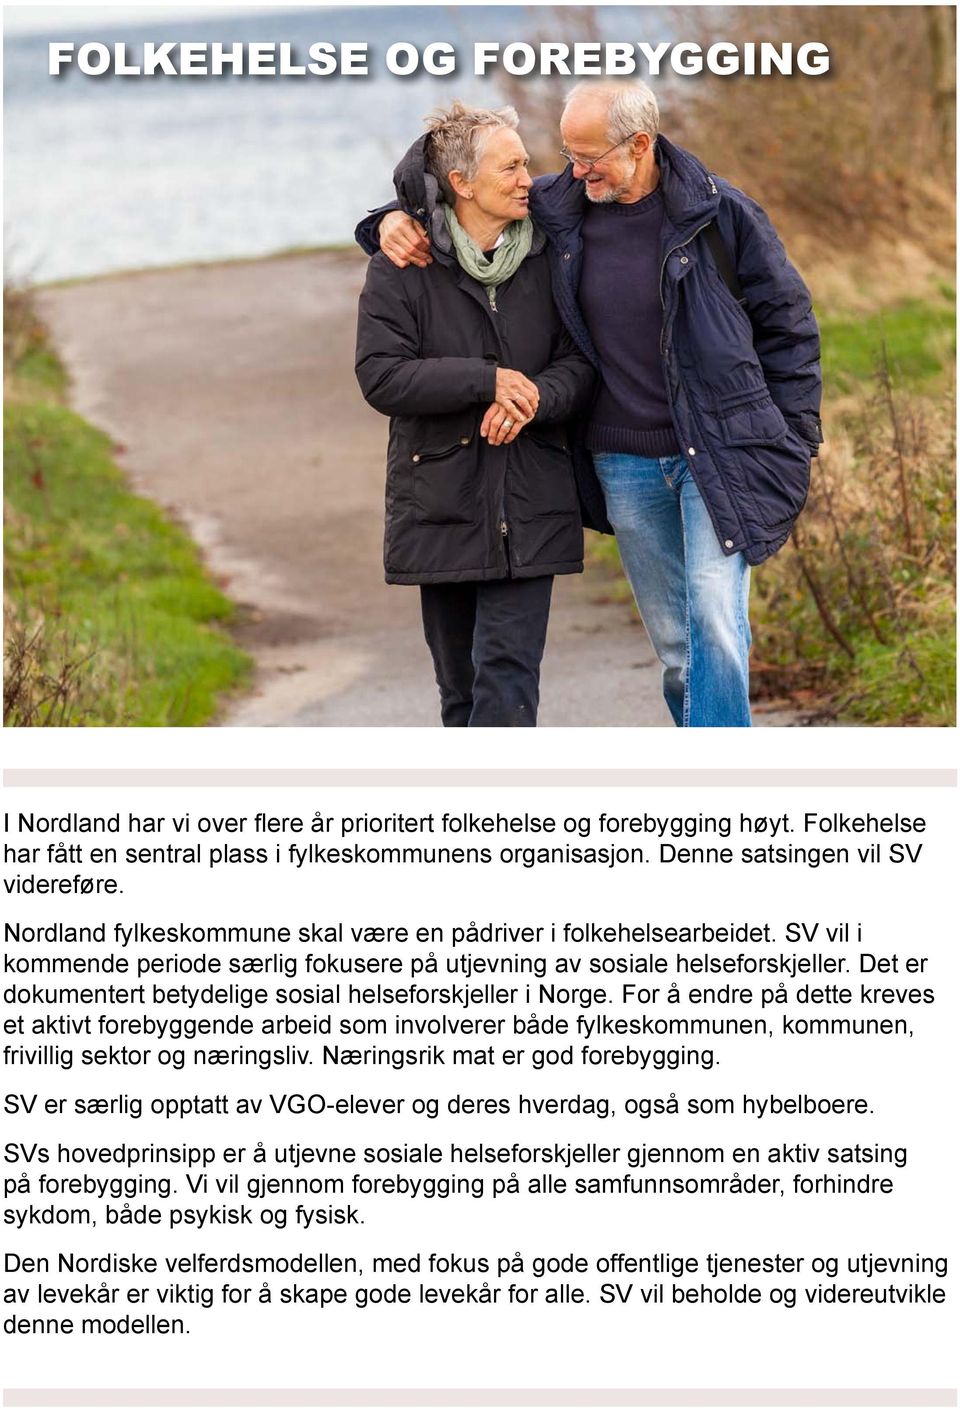 Det er dokumentert betydelige sosial helseforskjeller i Norge. For å endre på dette kreves et aktivt forebyggende arbeid som involverer både fylkeskommunen, kommunen, frivillig sektor og næringsliv.